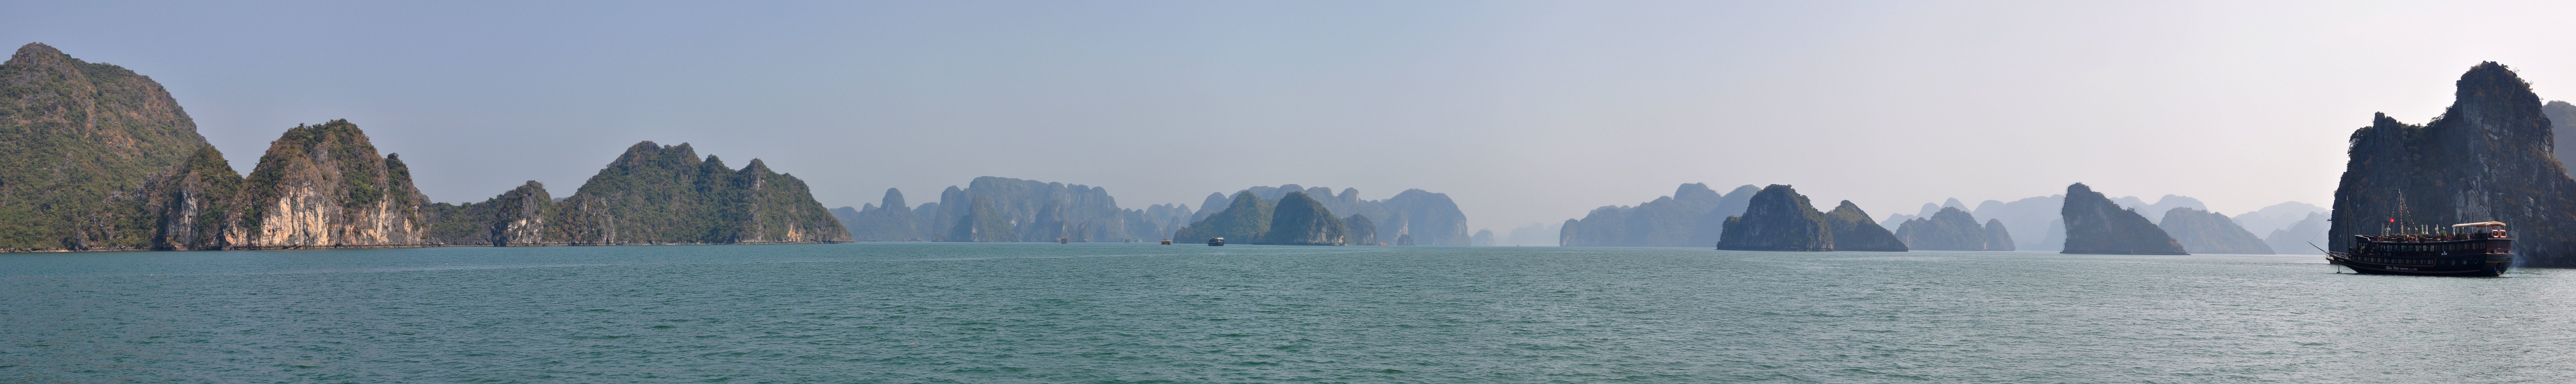 Ha Long Bay - Vietnam.jpg